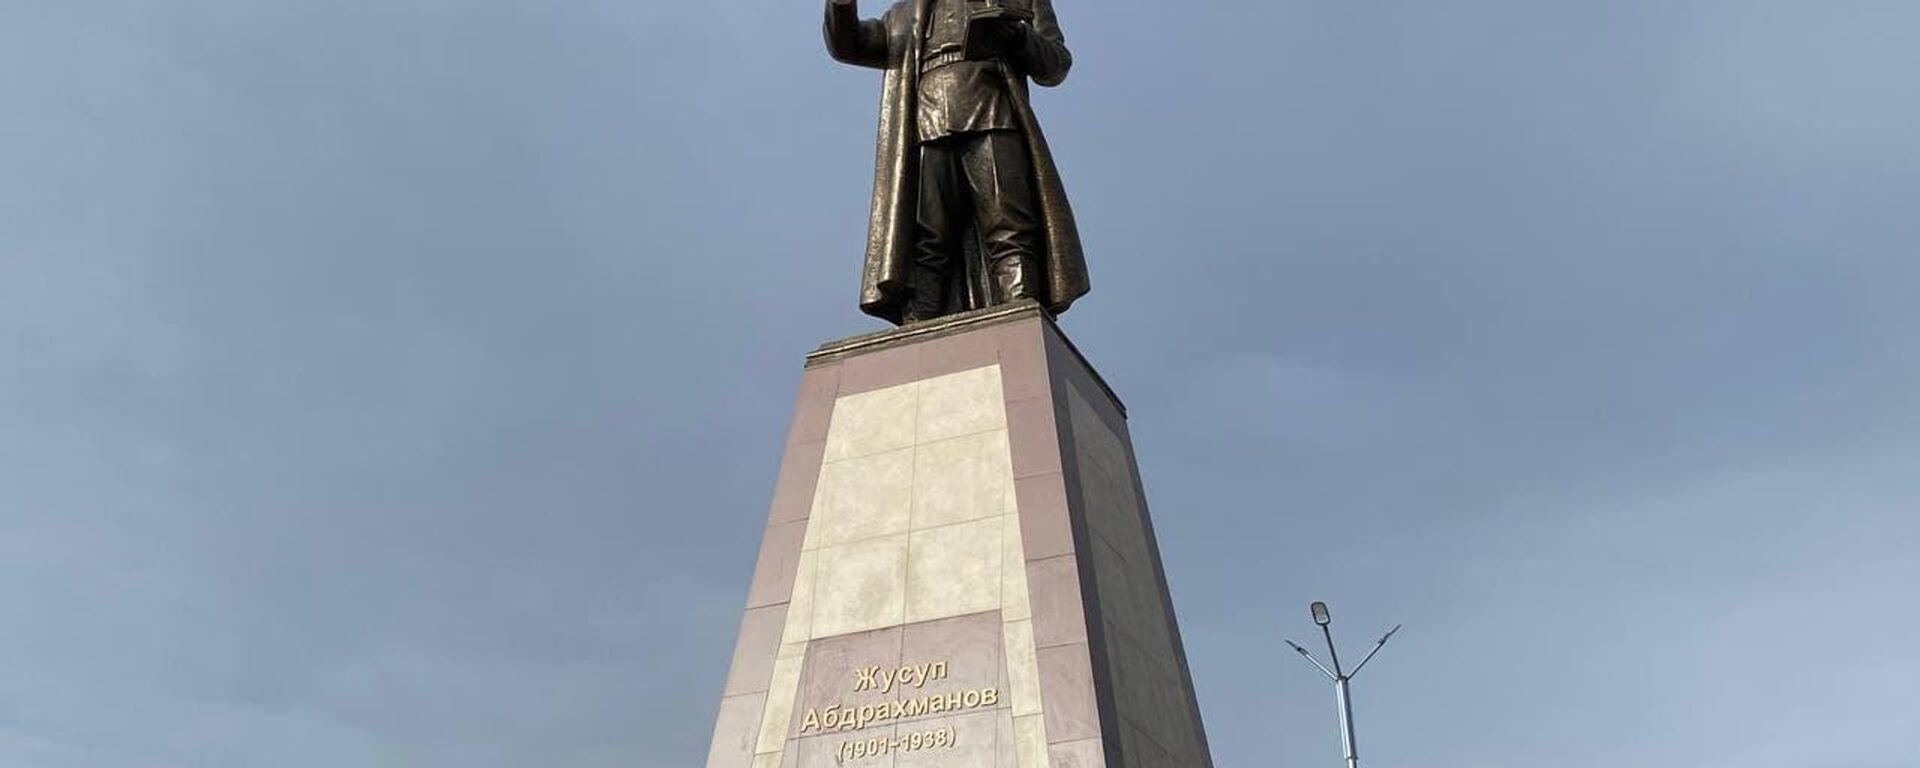 В парке Чолпон-Аты открыли парк имени Жусупа Абдрахманова — одного из родоначальников кыргызской государственности - Sputnik Кыргызстан, 1920, 24.12.2021